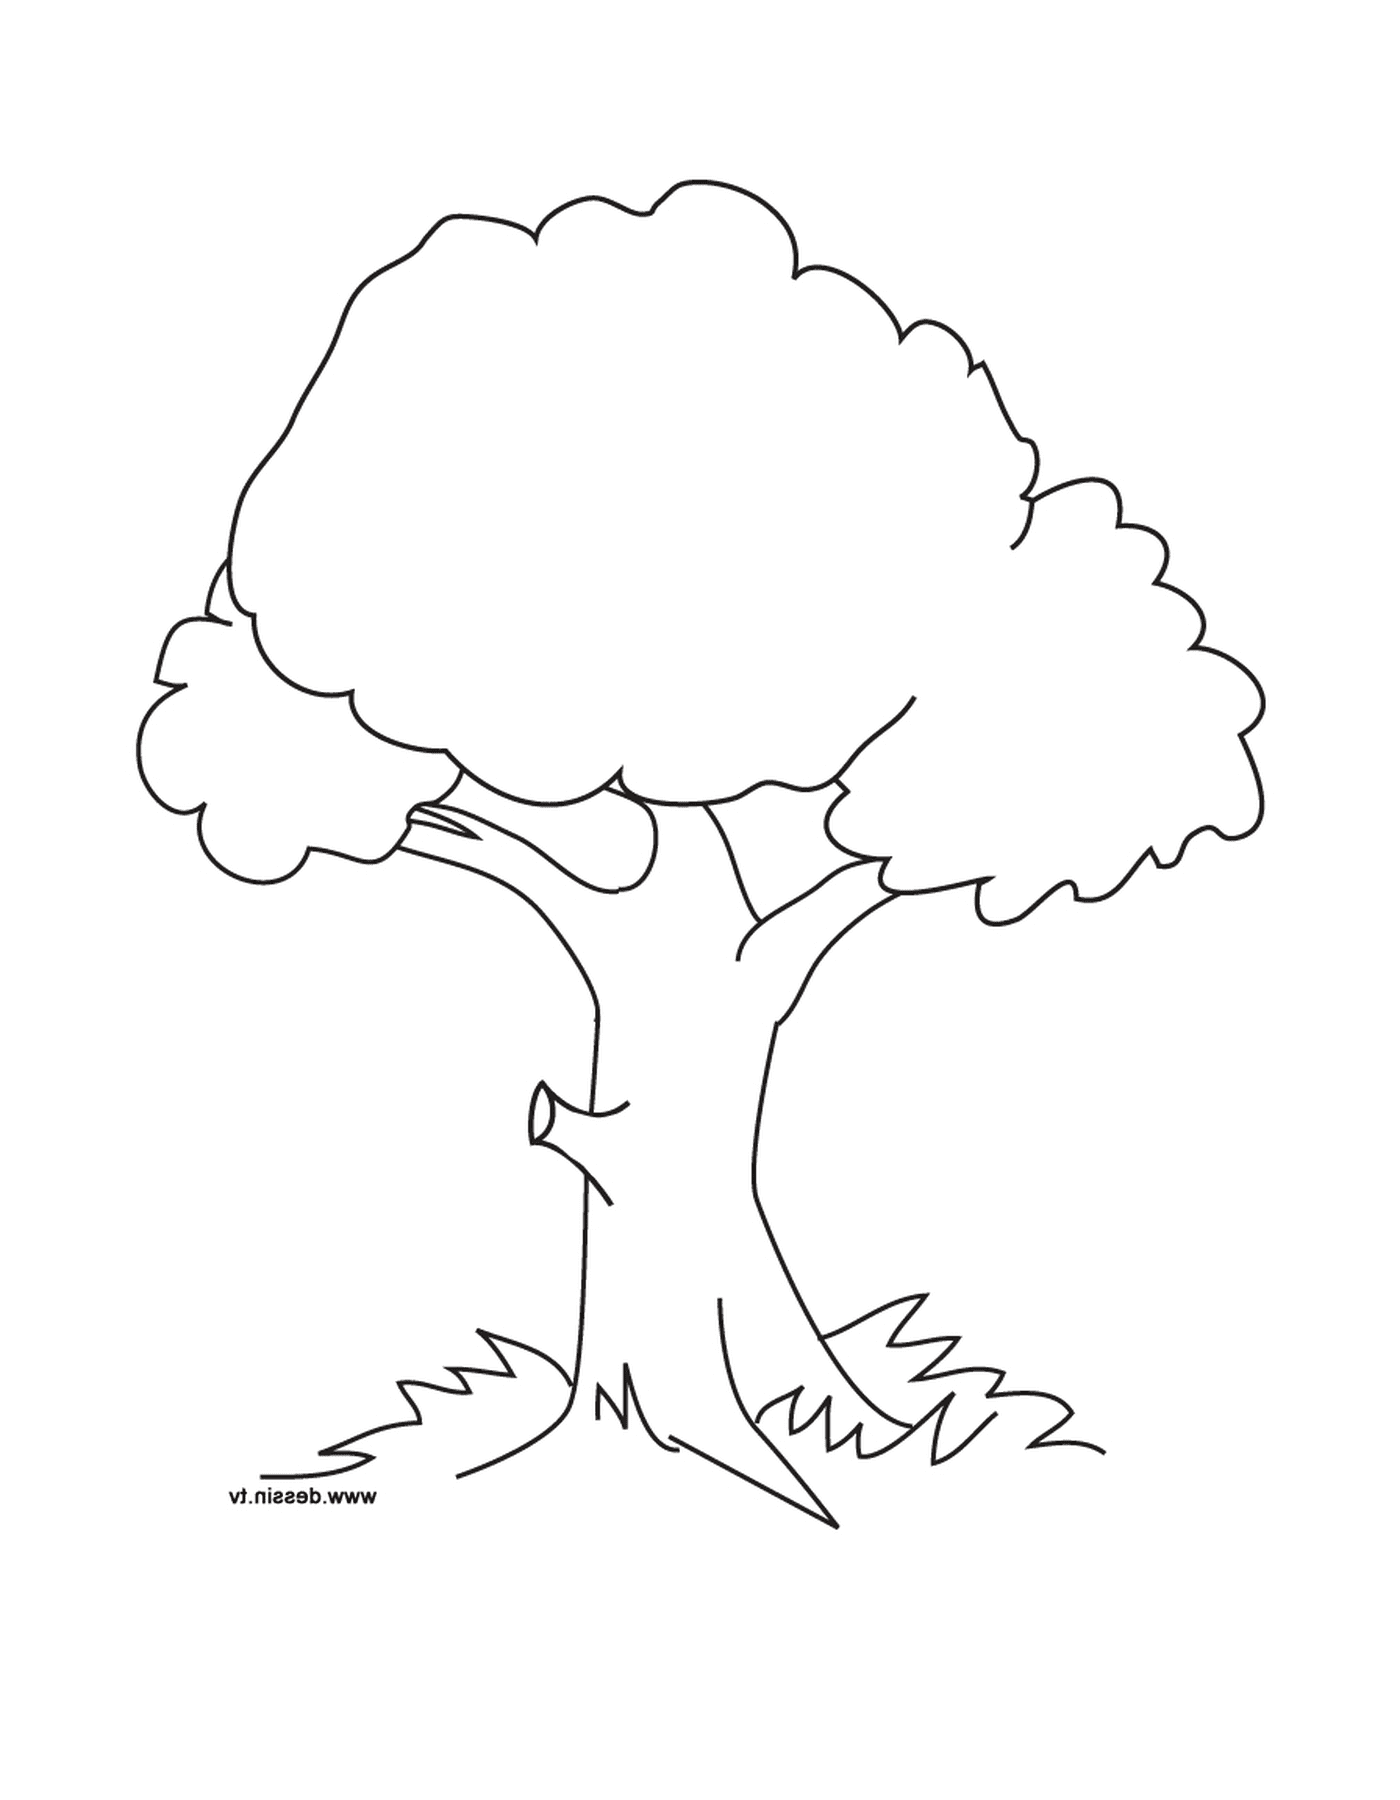  дерево 